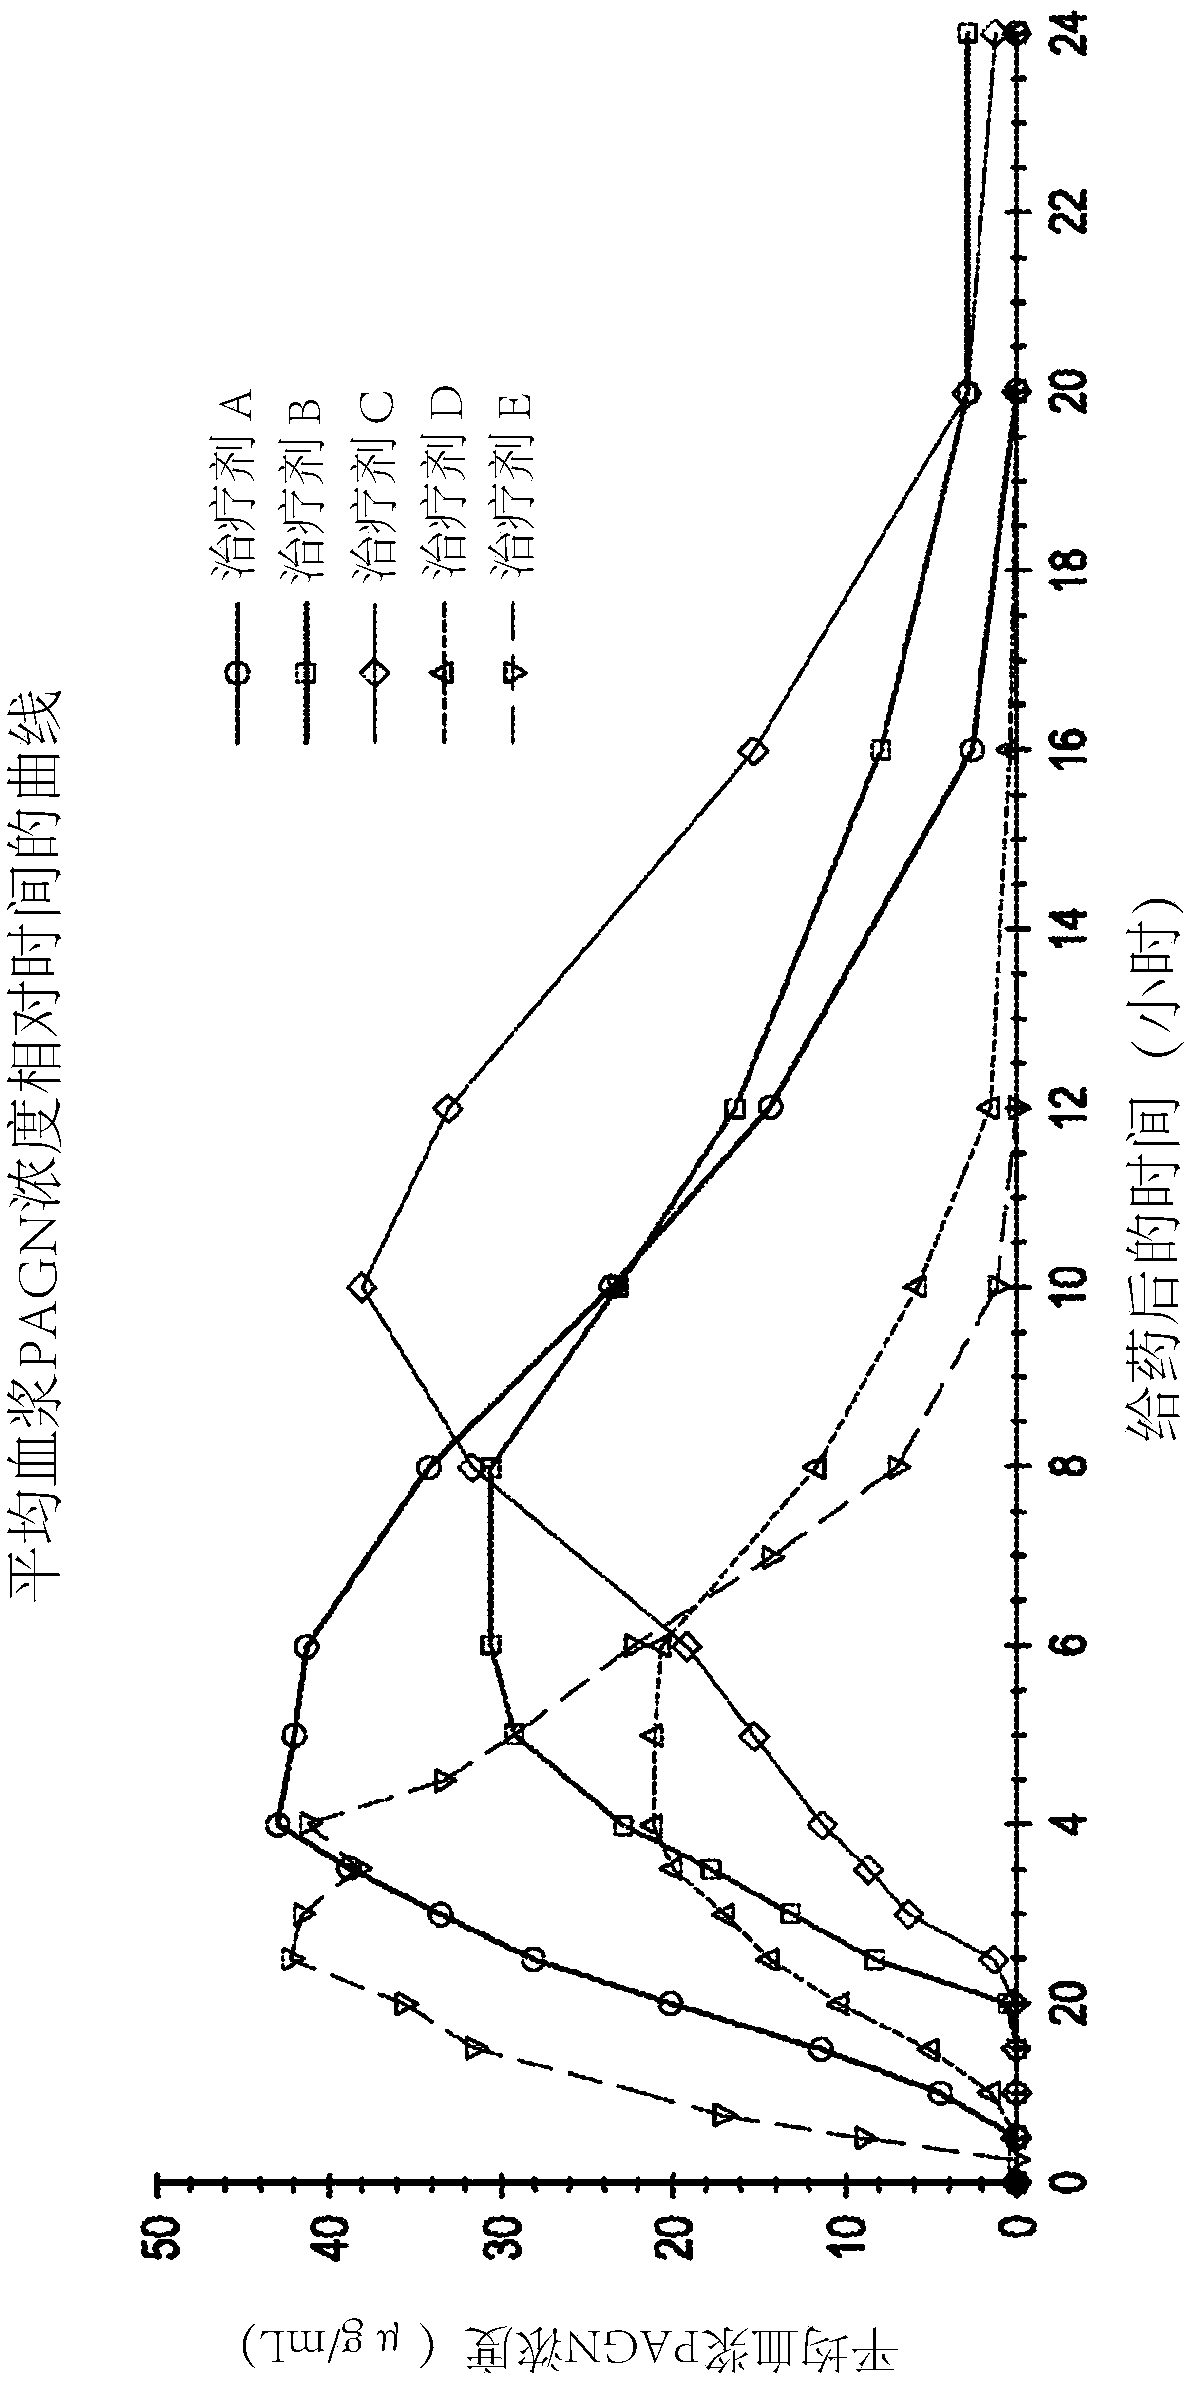 Formulation of l-ornithine phenylacetate